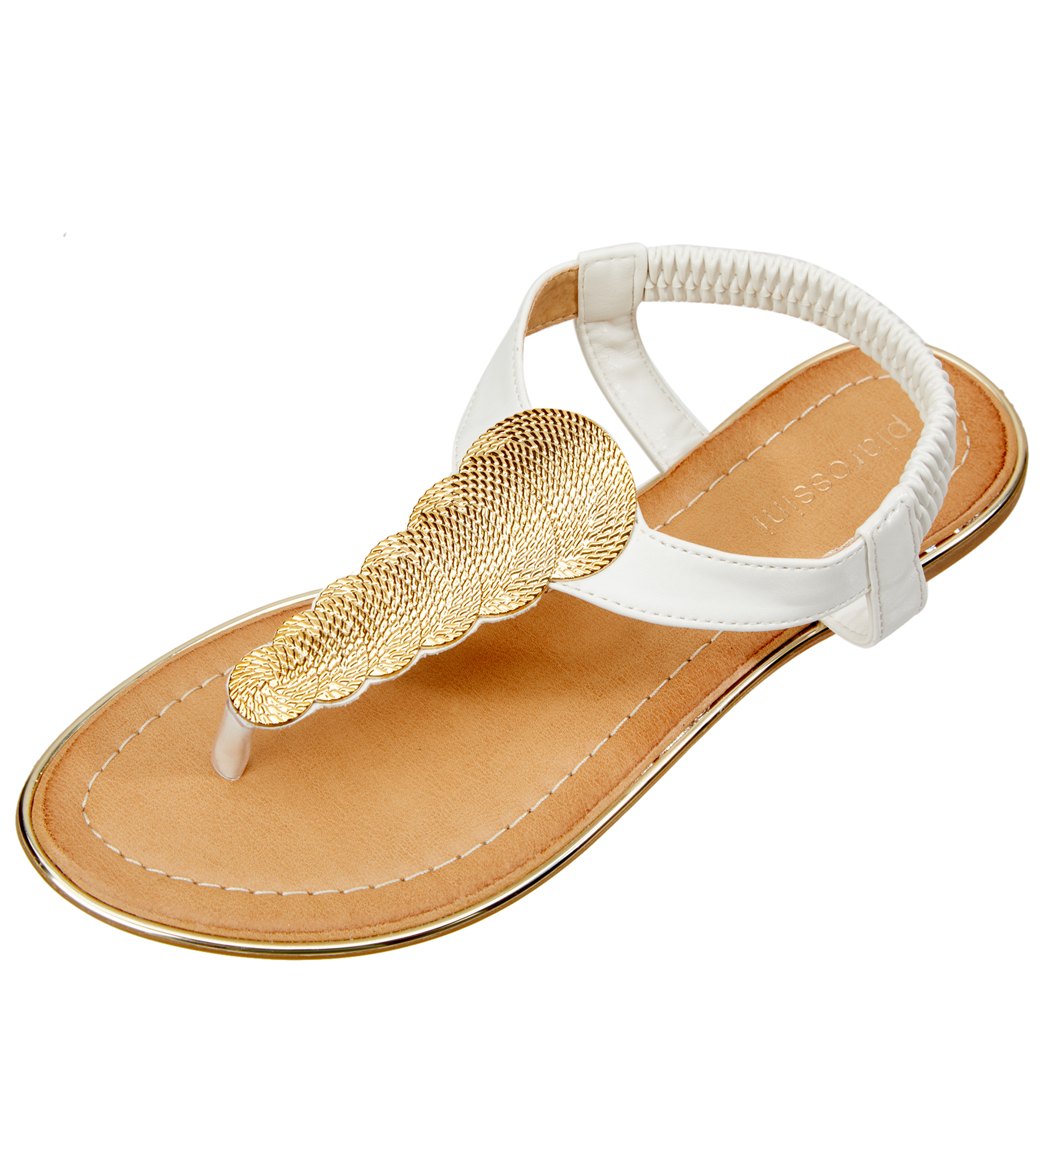 Pia Rossini Women's Comet Sandals - White 9 Eu 40 - Swimoutlet.com